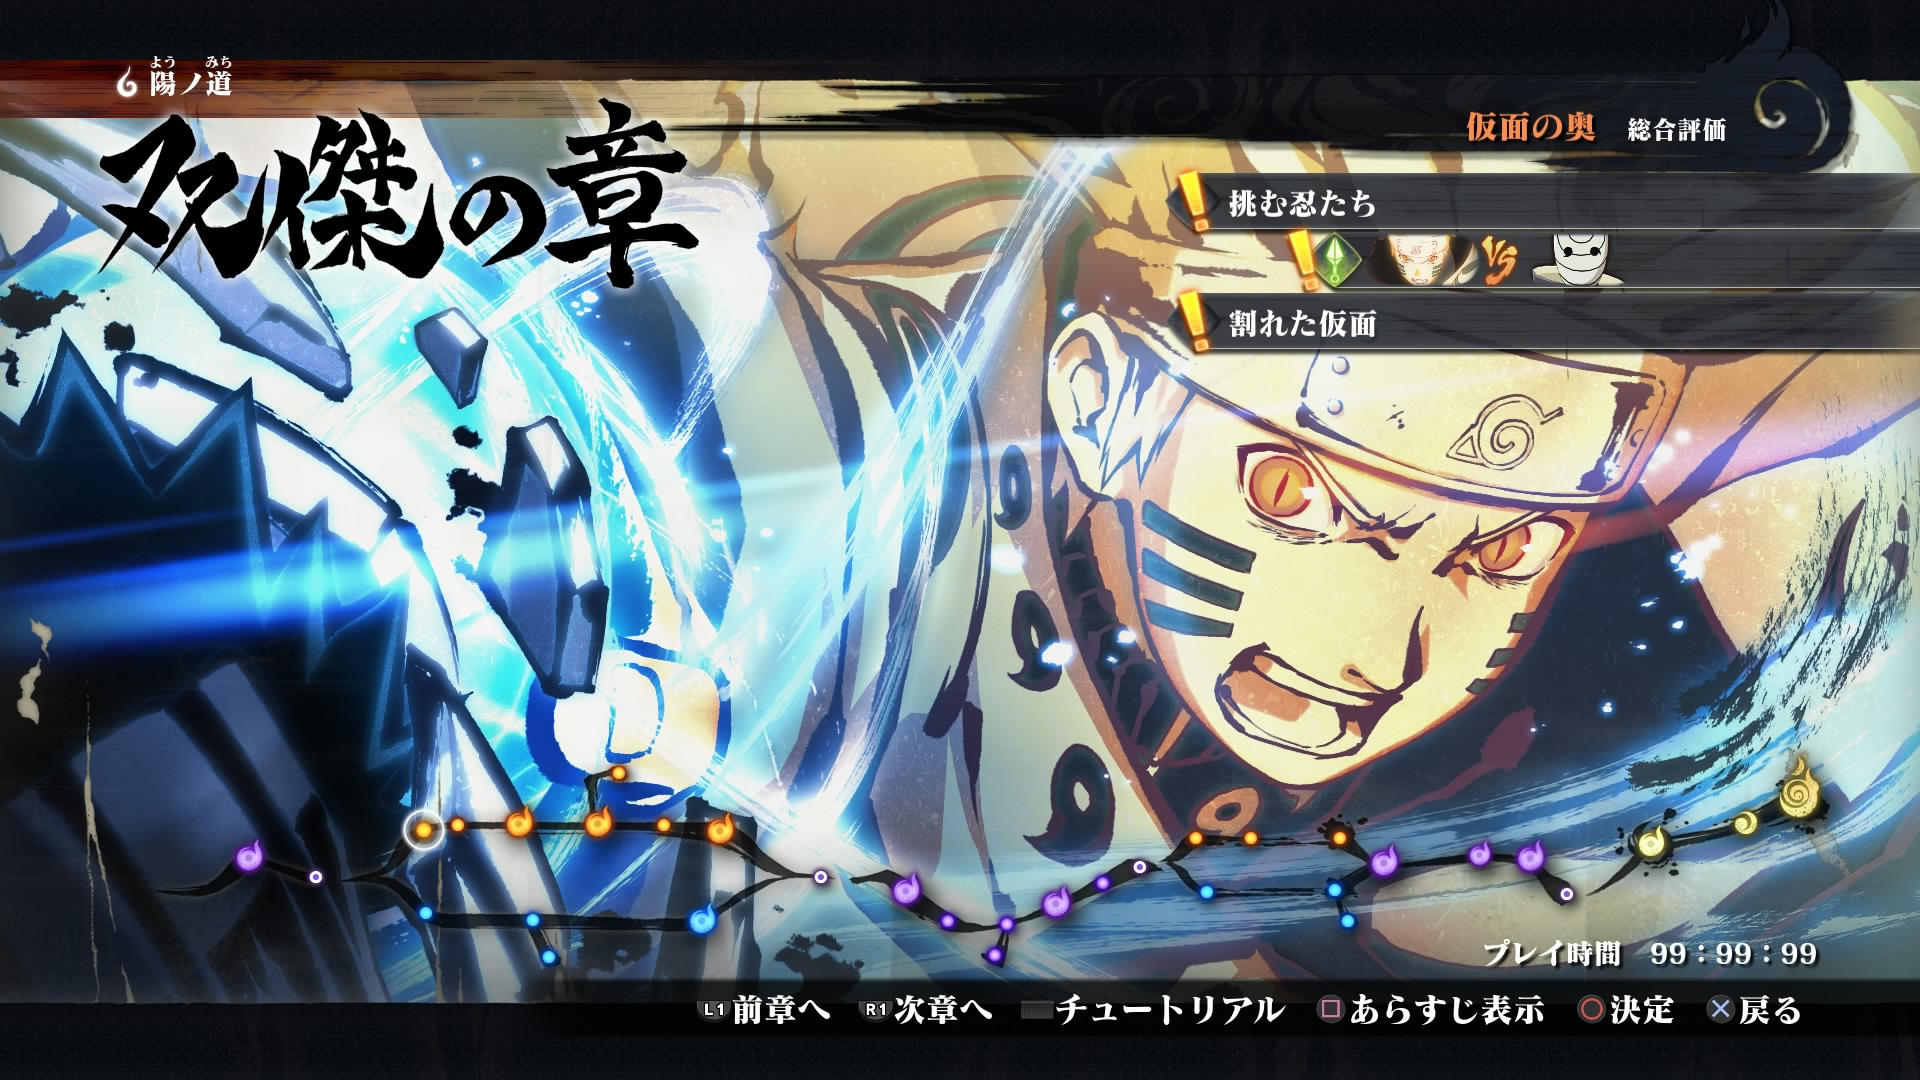 Naruto Shippuden: Ultimate Ninja Storm 4 Road to Boruto latest details,  screenshots - Gematsu